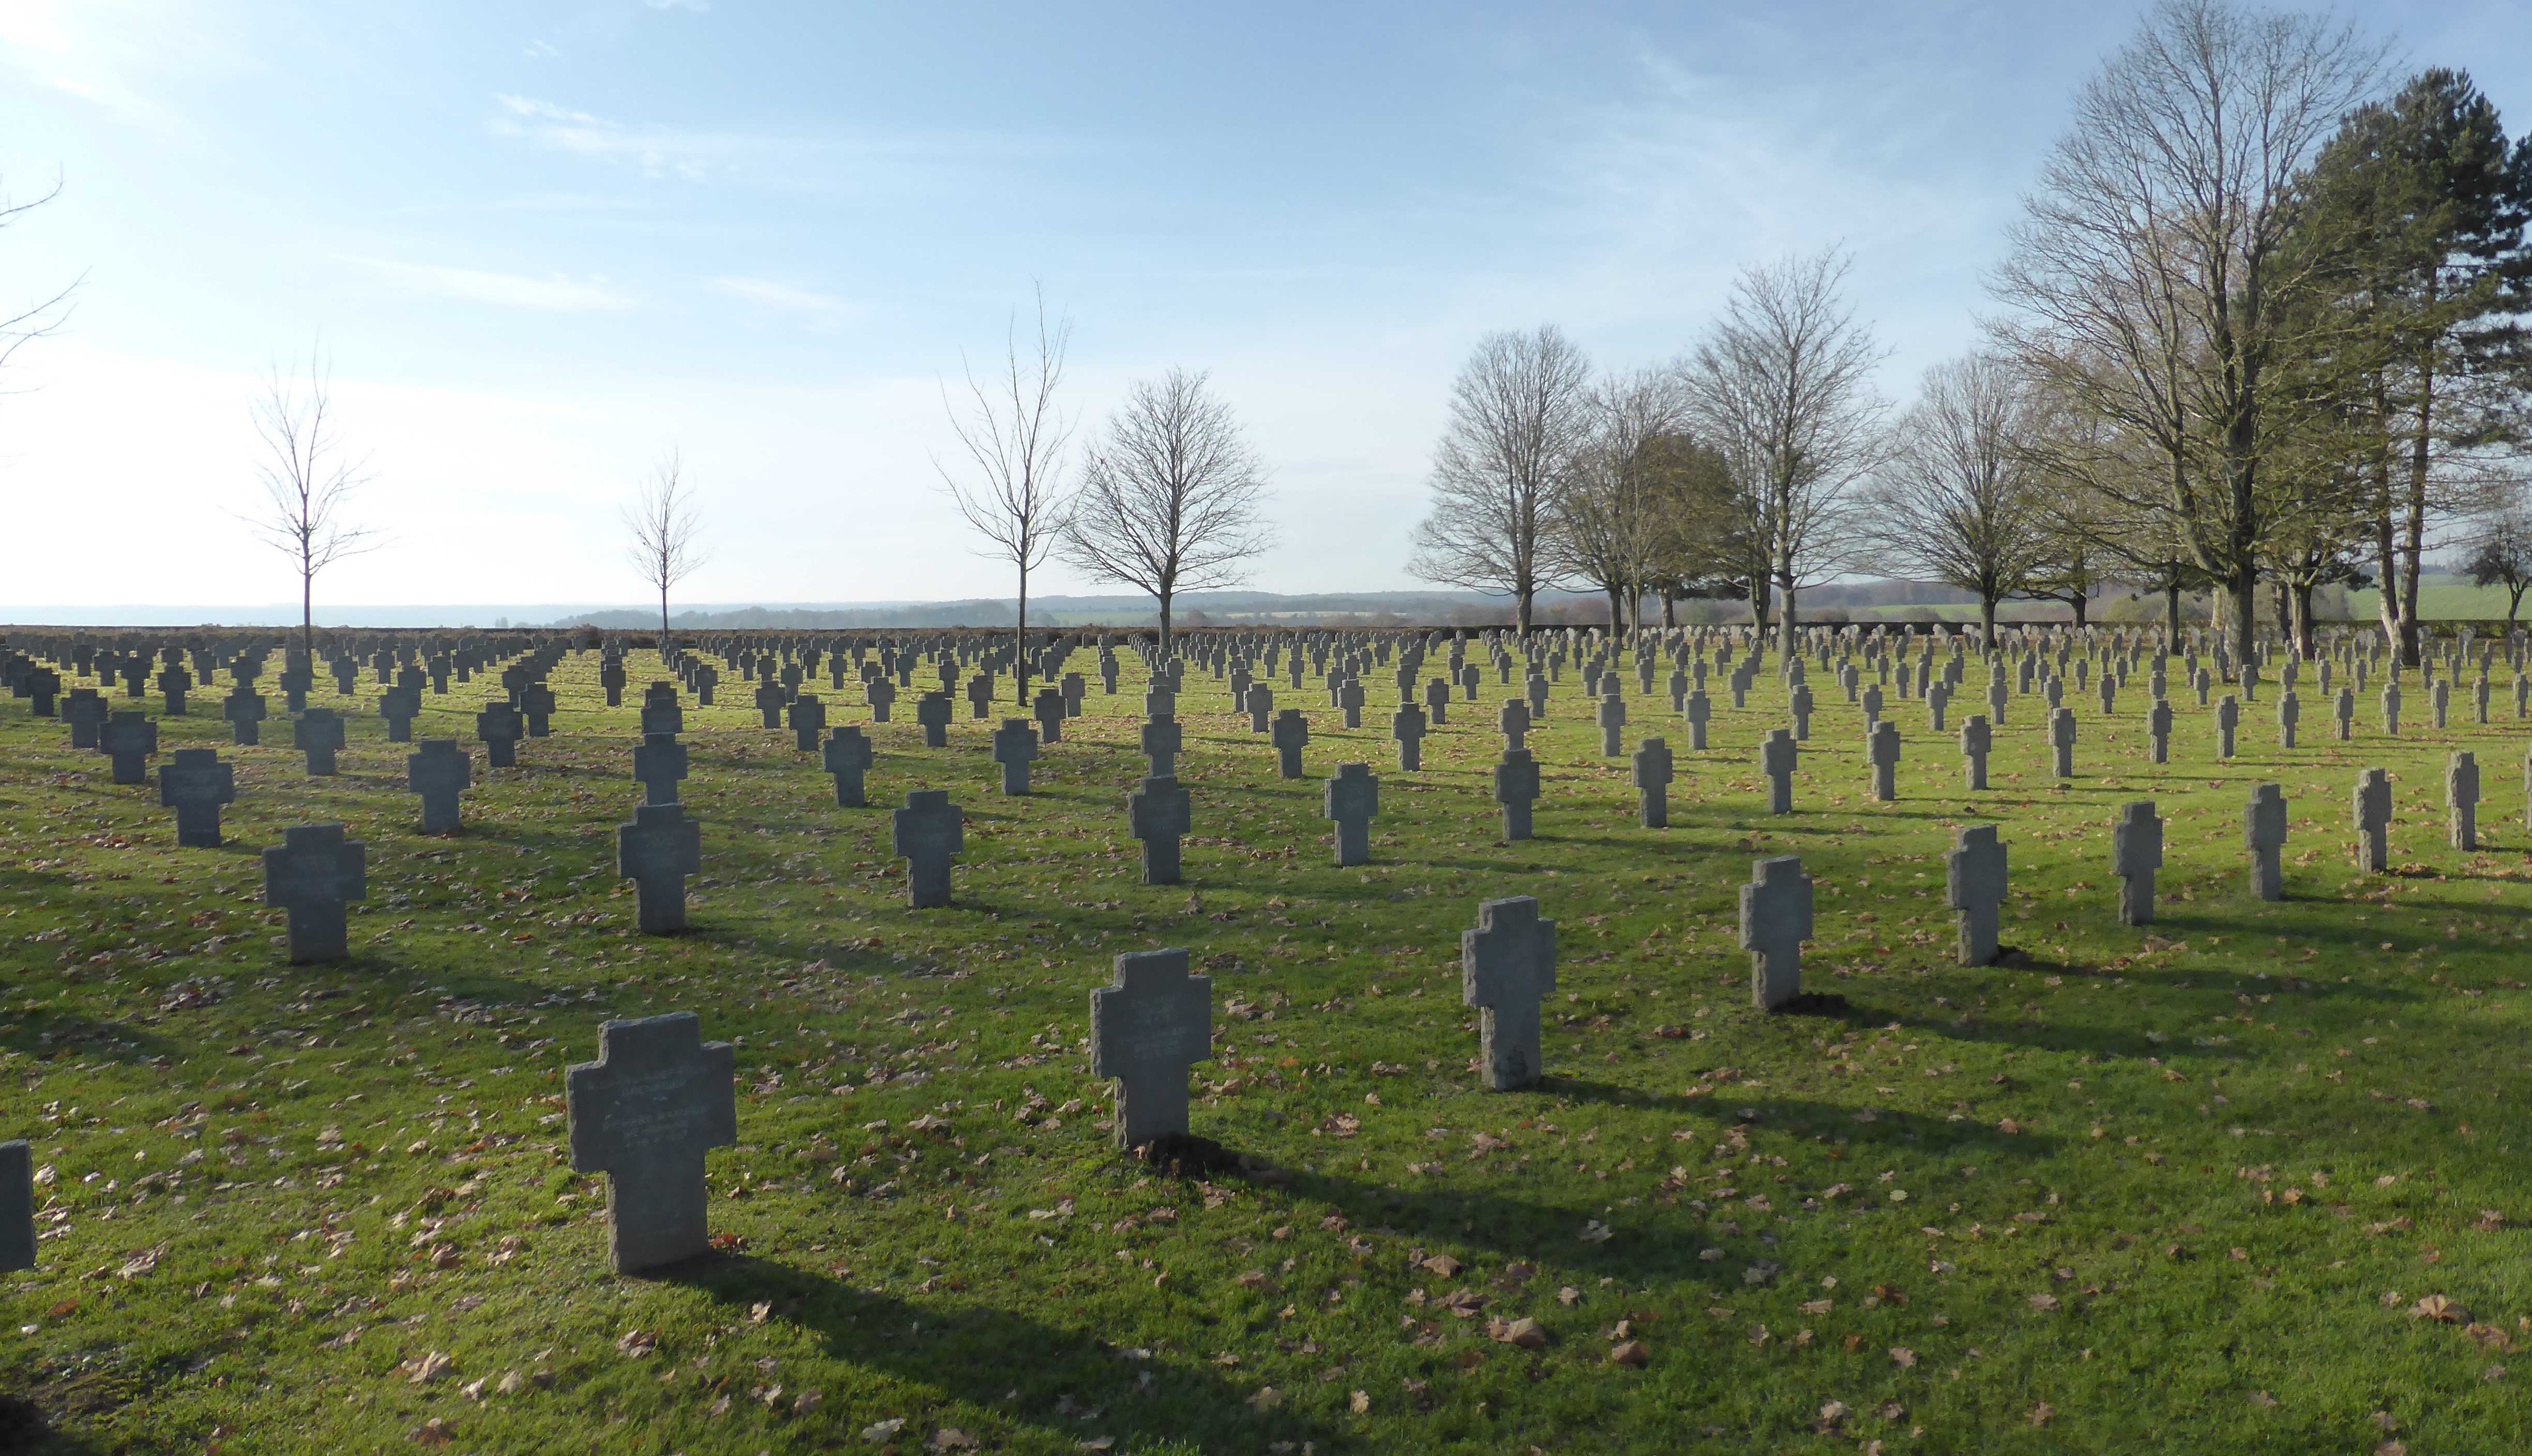 The German military graveyard in Cerny-en-Laonnois